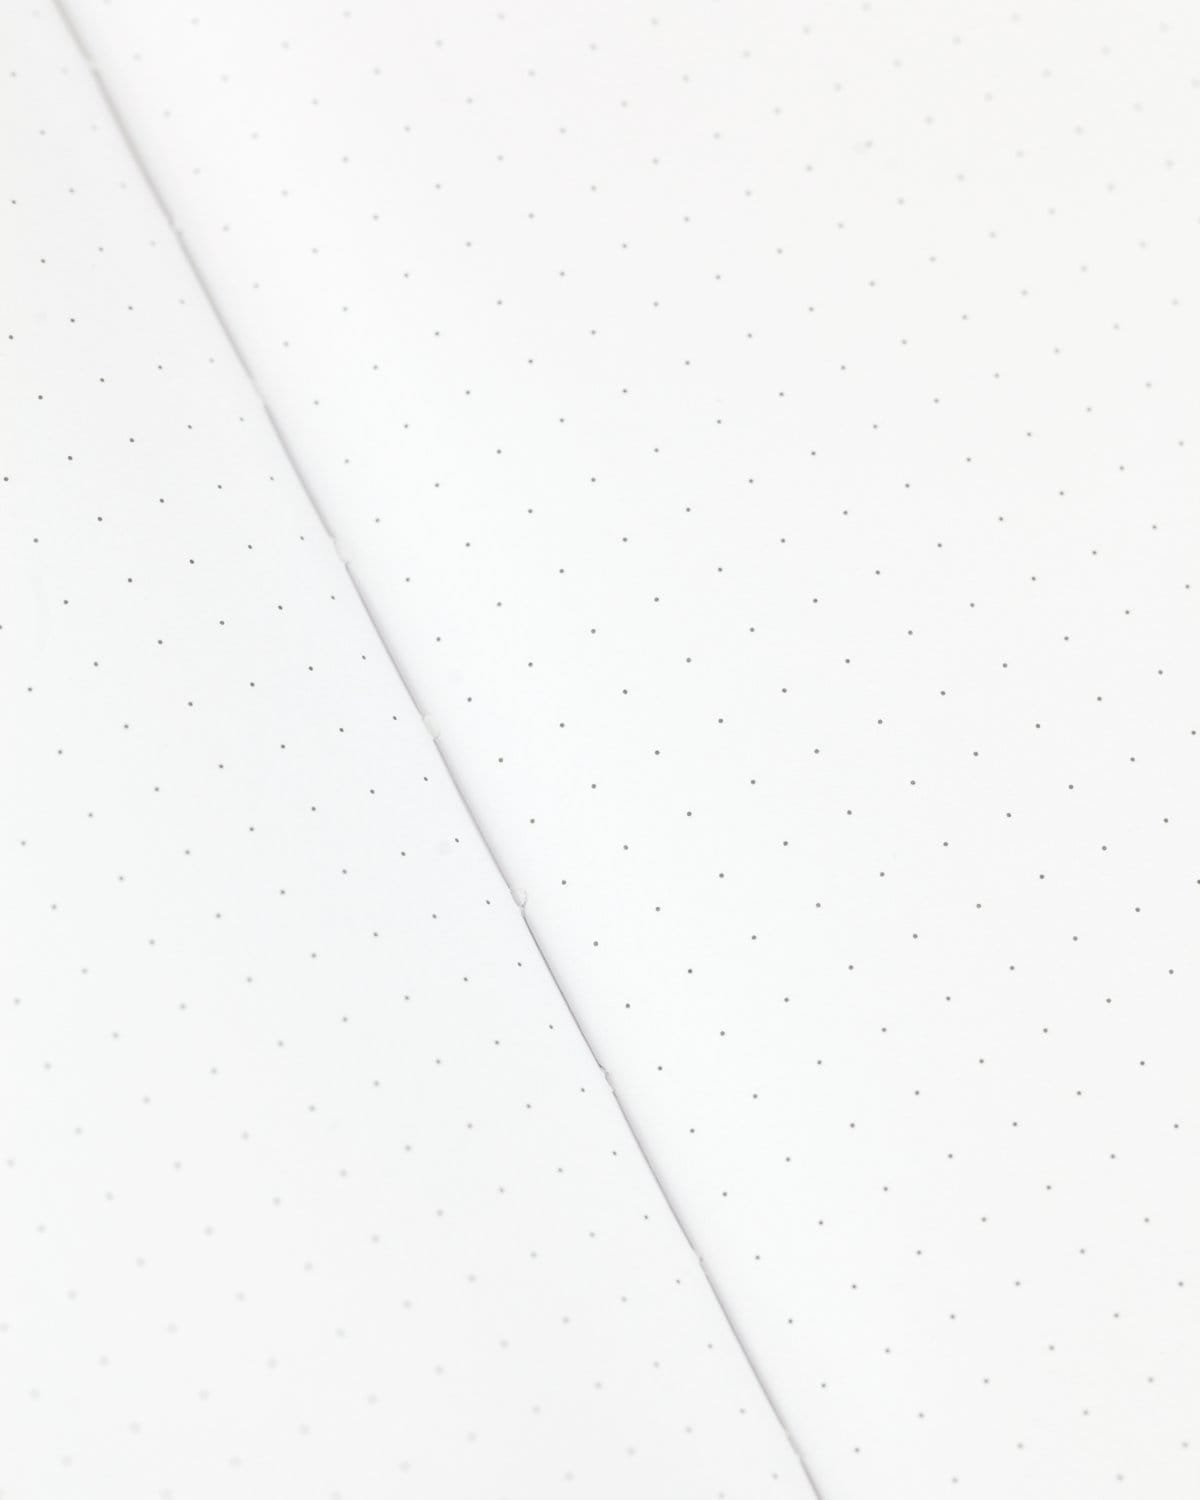 Ants Mini Hardcover - Dot Grid Cognitive Surplus